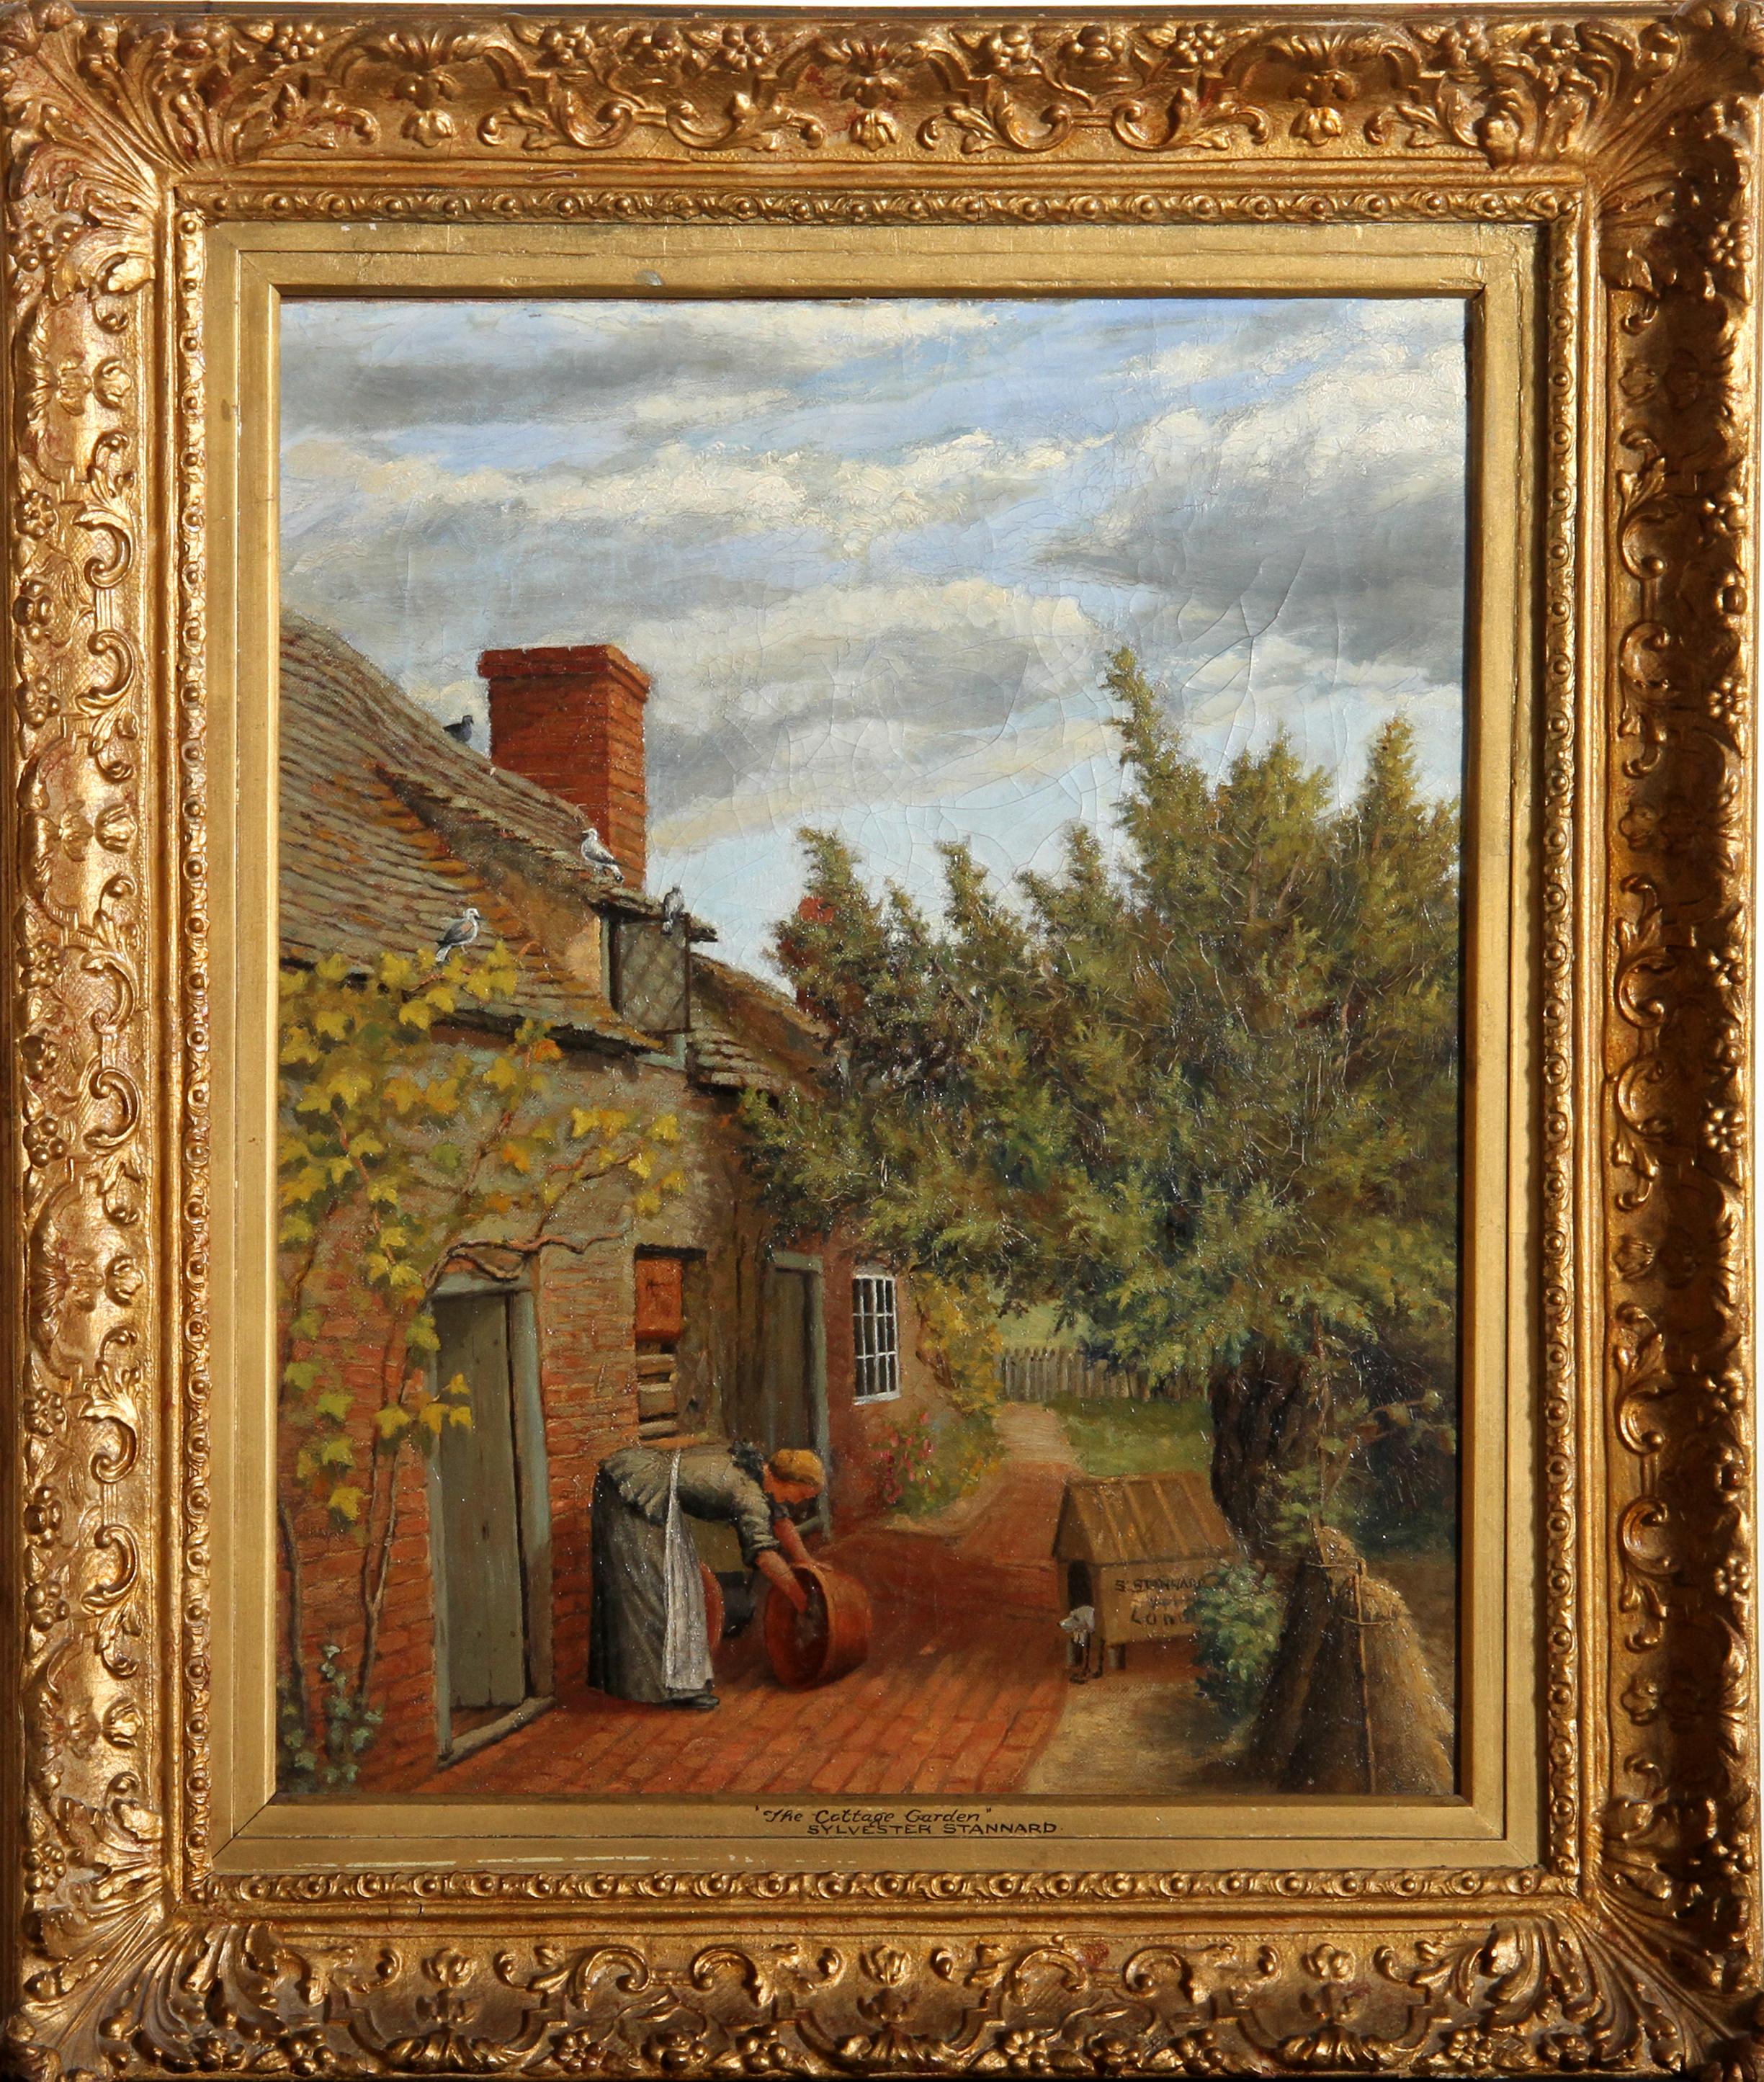 Peinture à l'huile néoclassique sur toile de l'artiste britannique Henry John Sylvester Stannard. La scène montre une femme nettoyant un seau à l'extérieur de sa maison sous le regard d'un chien niché dans une niche. Le tableau est signé par